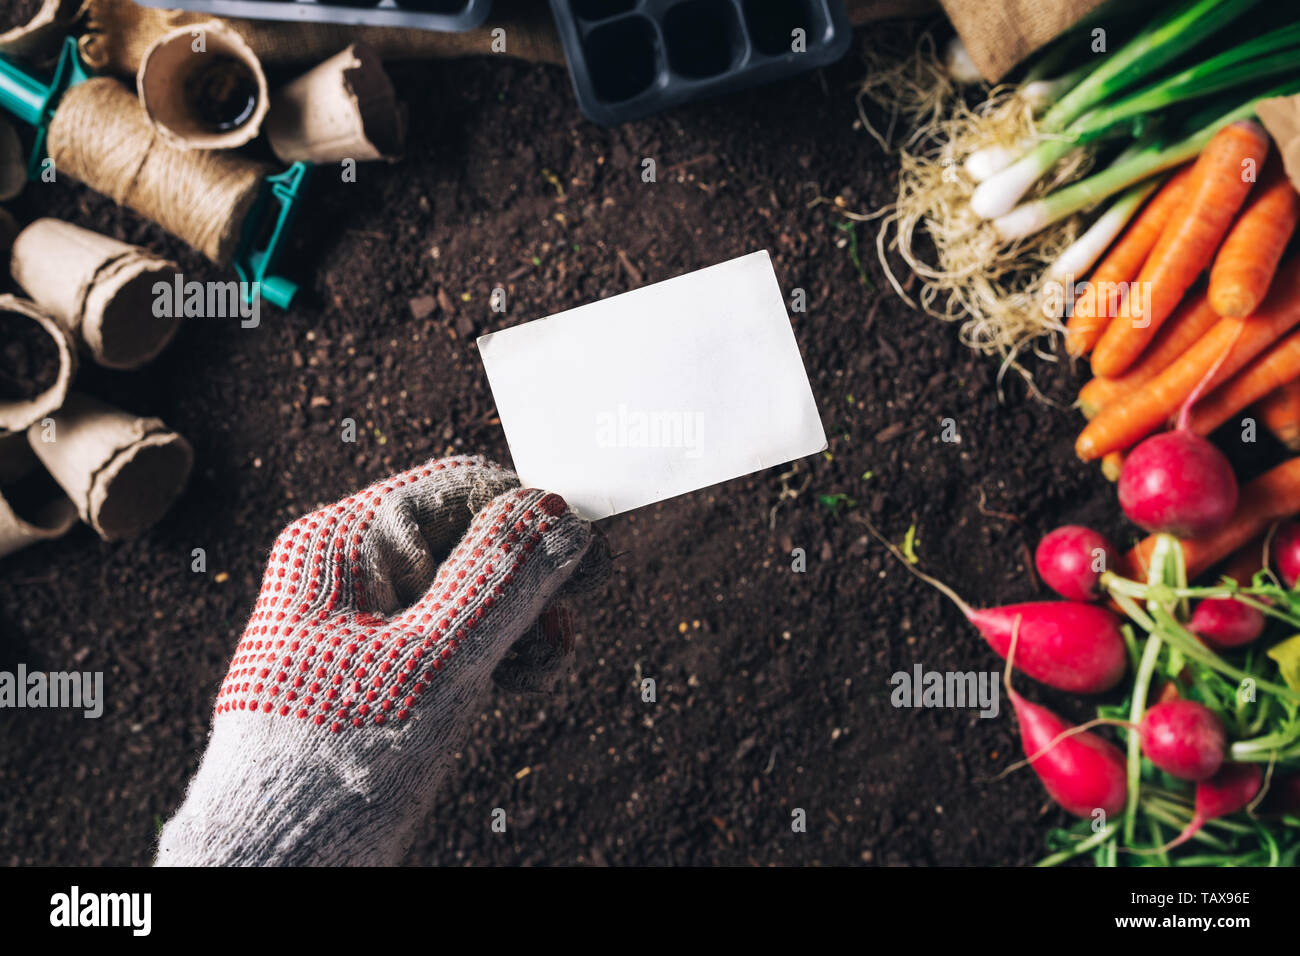 Business card mock up per organici homegrown produrre coltivazione, maschio giardiniere tenendo la scheda su raccolte di vegetali e attrezzature da giardinaggio Foto Stock